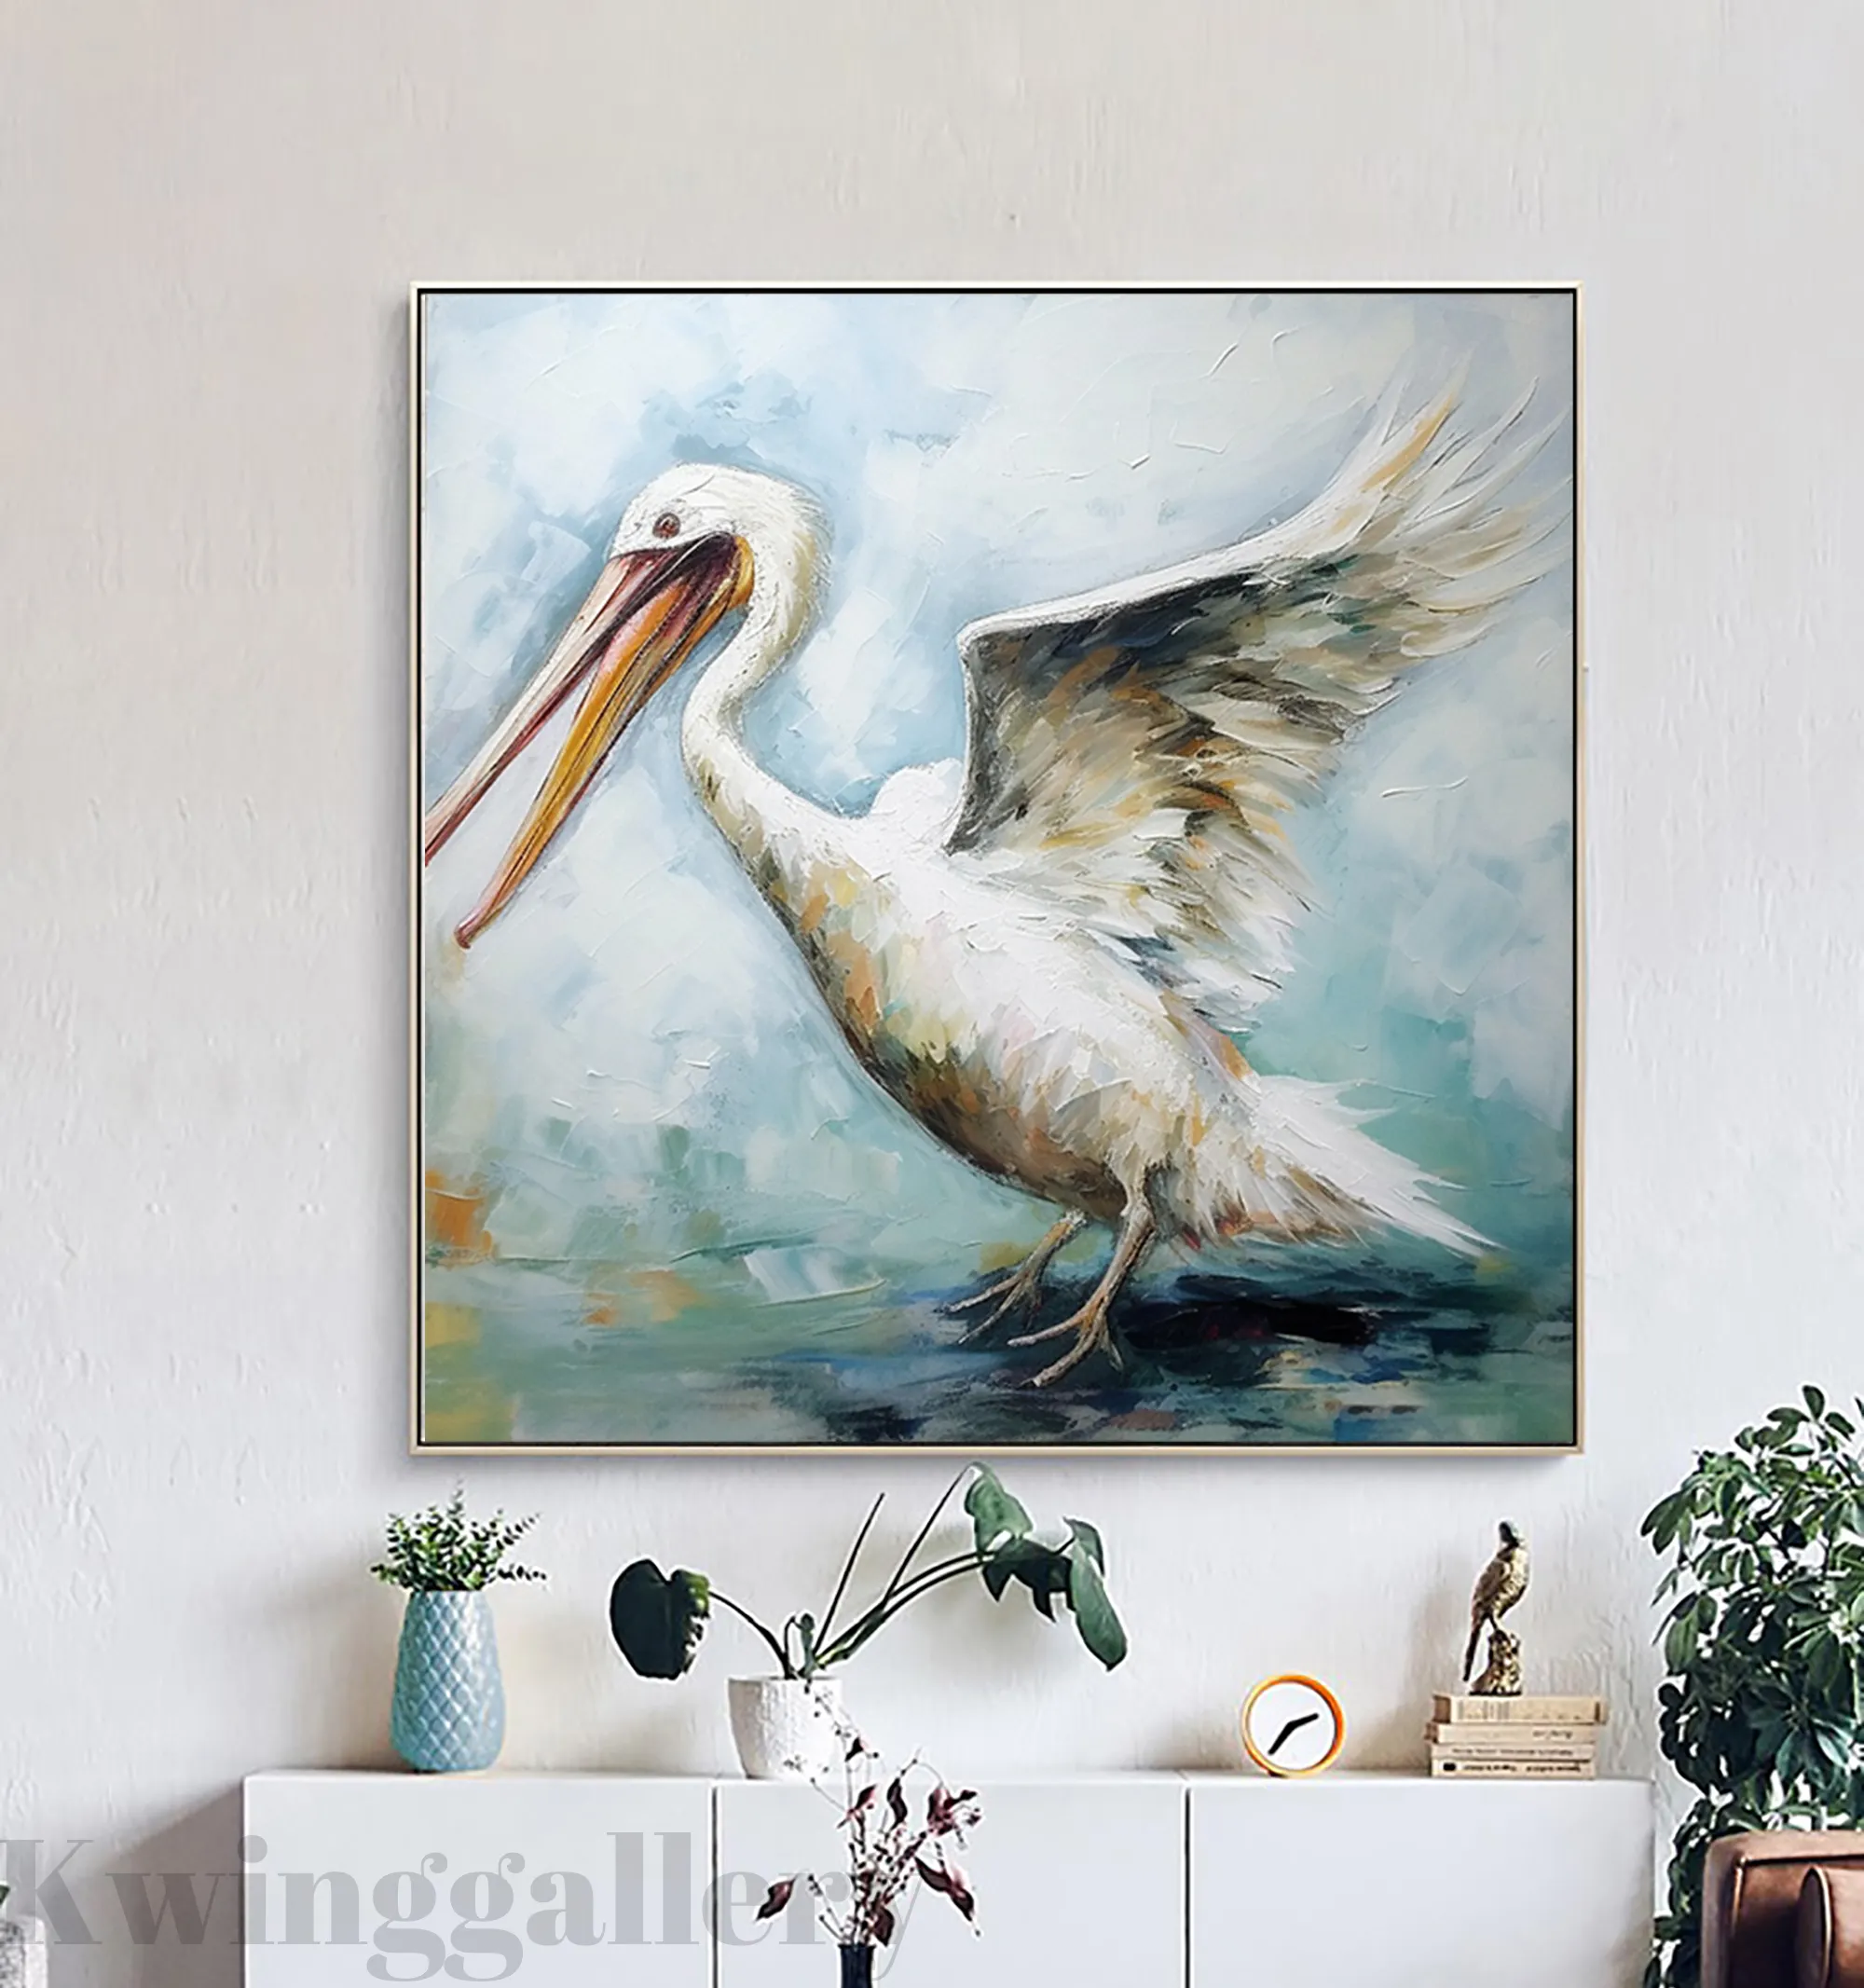 キャンバスの壁のアートの抽象的なペリカンの絵画オリジナルの白い鳥のアートワーク部屋の装飾のための創造的な手作りの動物の油絵